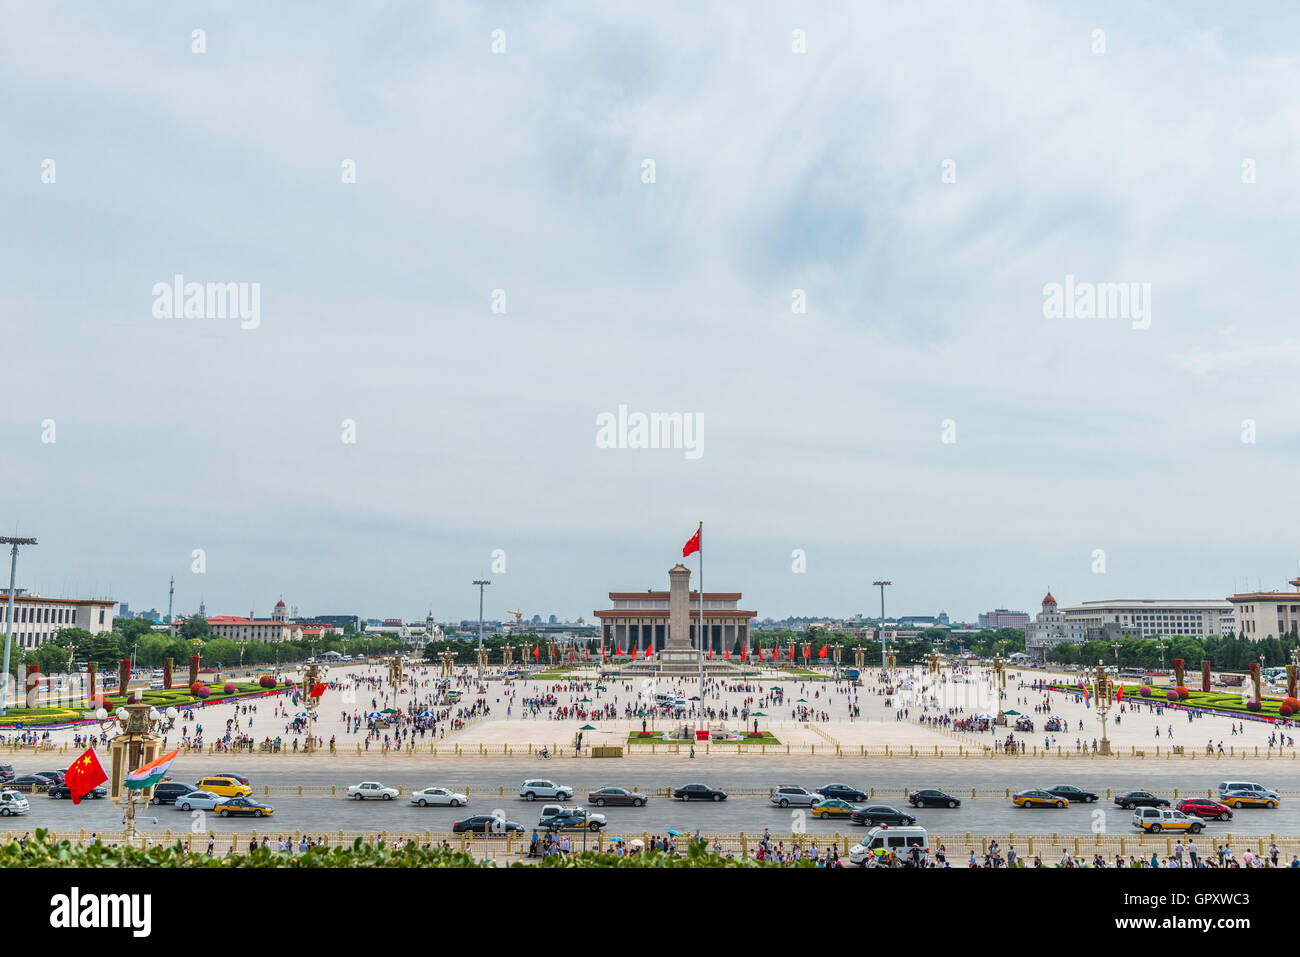 Piazza Tiananmen, uno dei più grandi del mondo City Square, la Cina la posizione del punto di riferimento, la Porta della Pace Celeste a Beijing in Cina Foto Stock